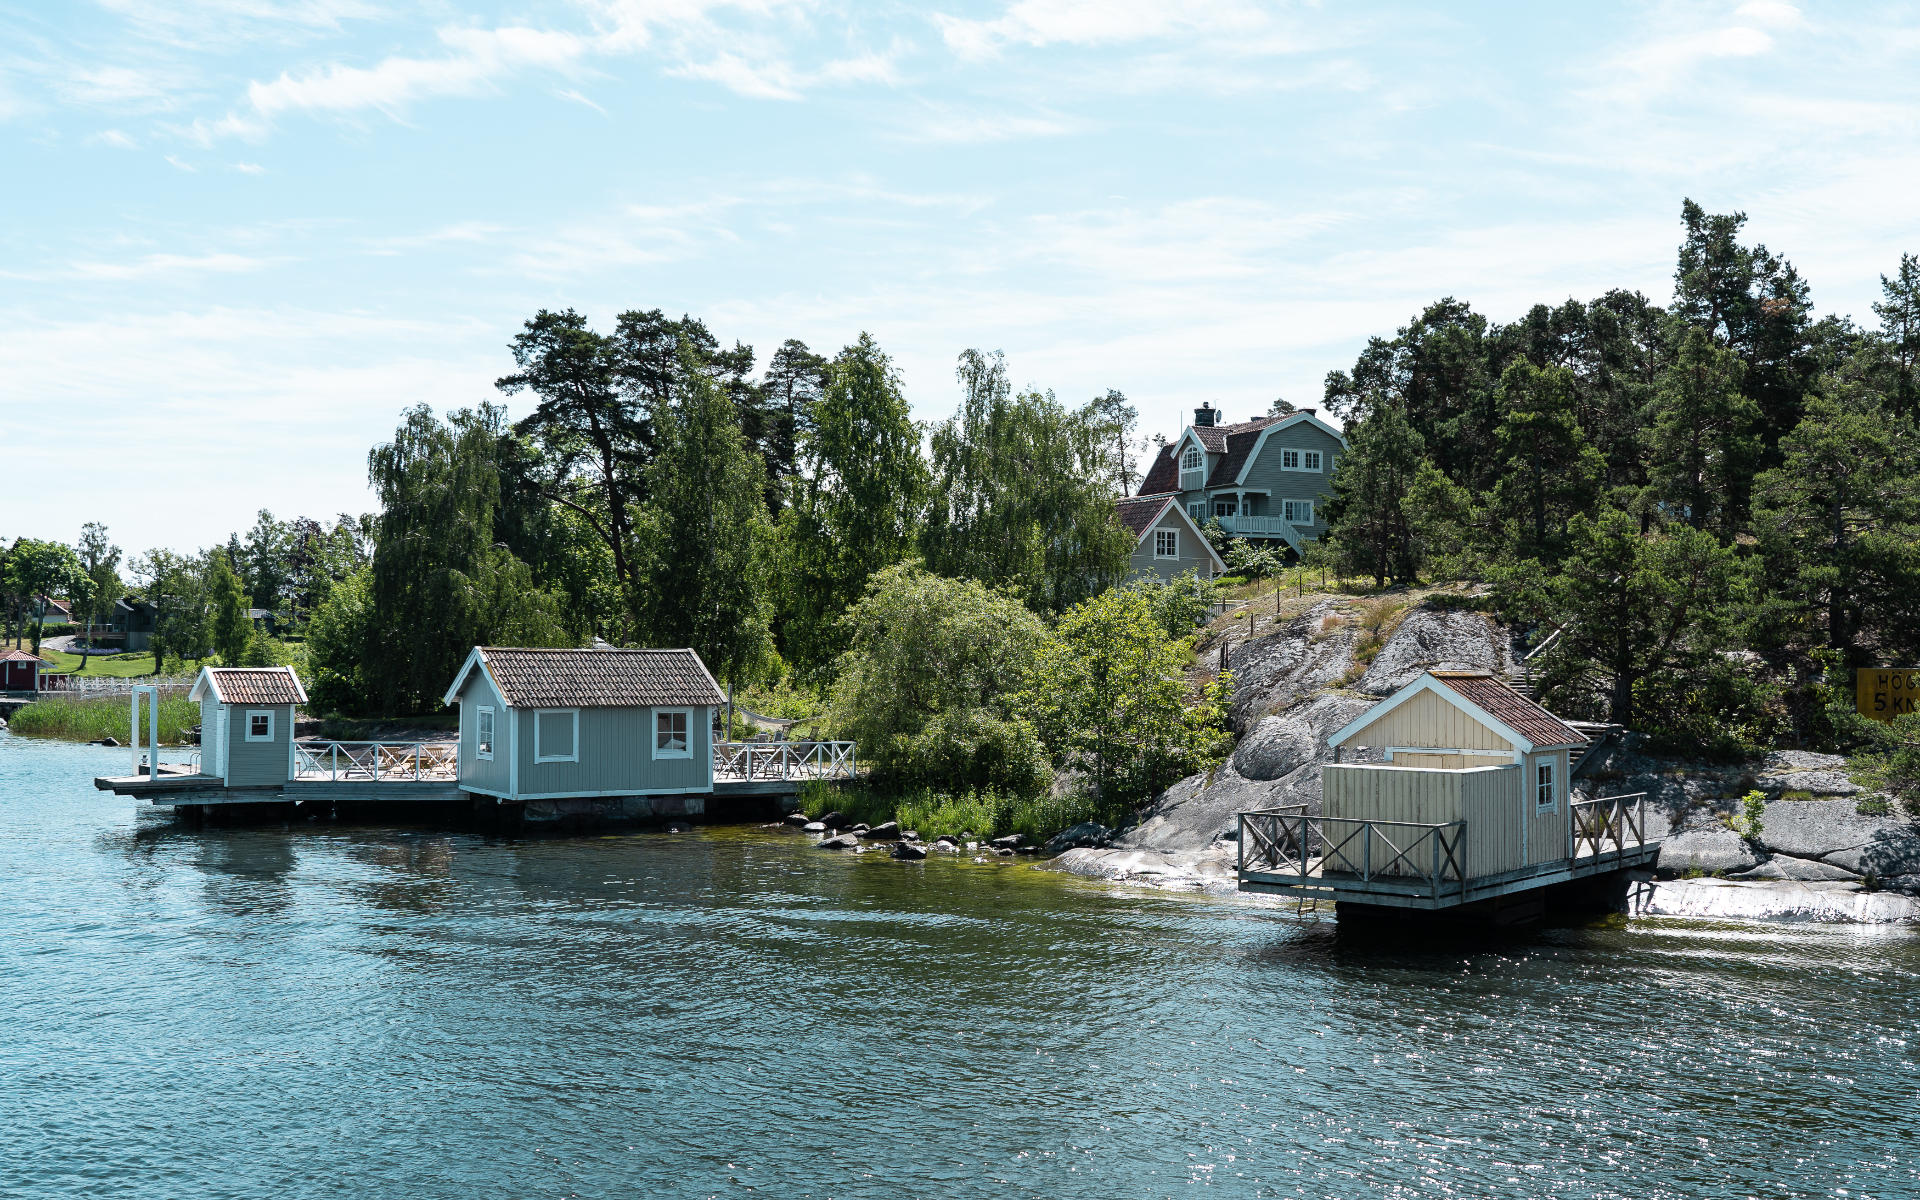 Unbedingt zu empfehlen ist ein Ausflug von Stockholm zu den kleinen, bunten Badehäusern aus Holz, die sich auf den Inseln des Schärengartens ans Ufer schmiegen. Hier kommt Sommer-in-Schweden-Feeling auf.